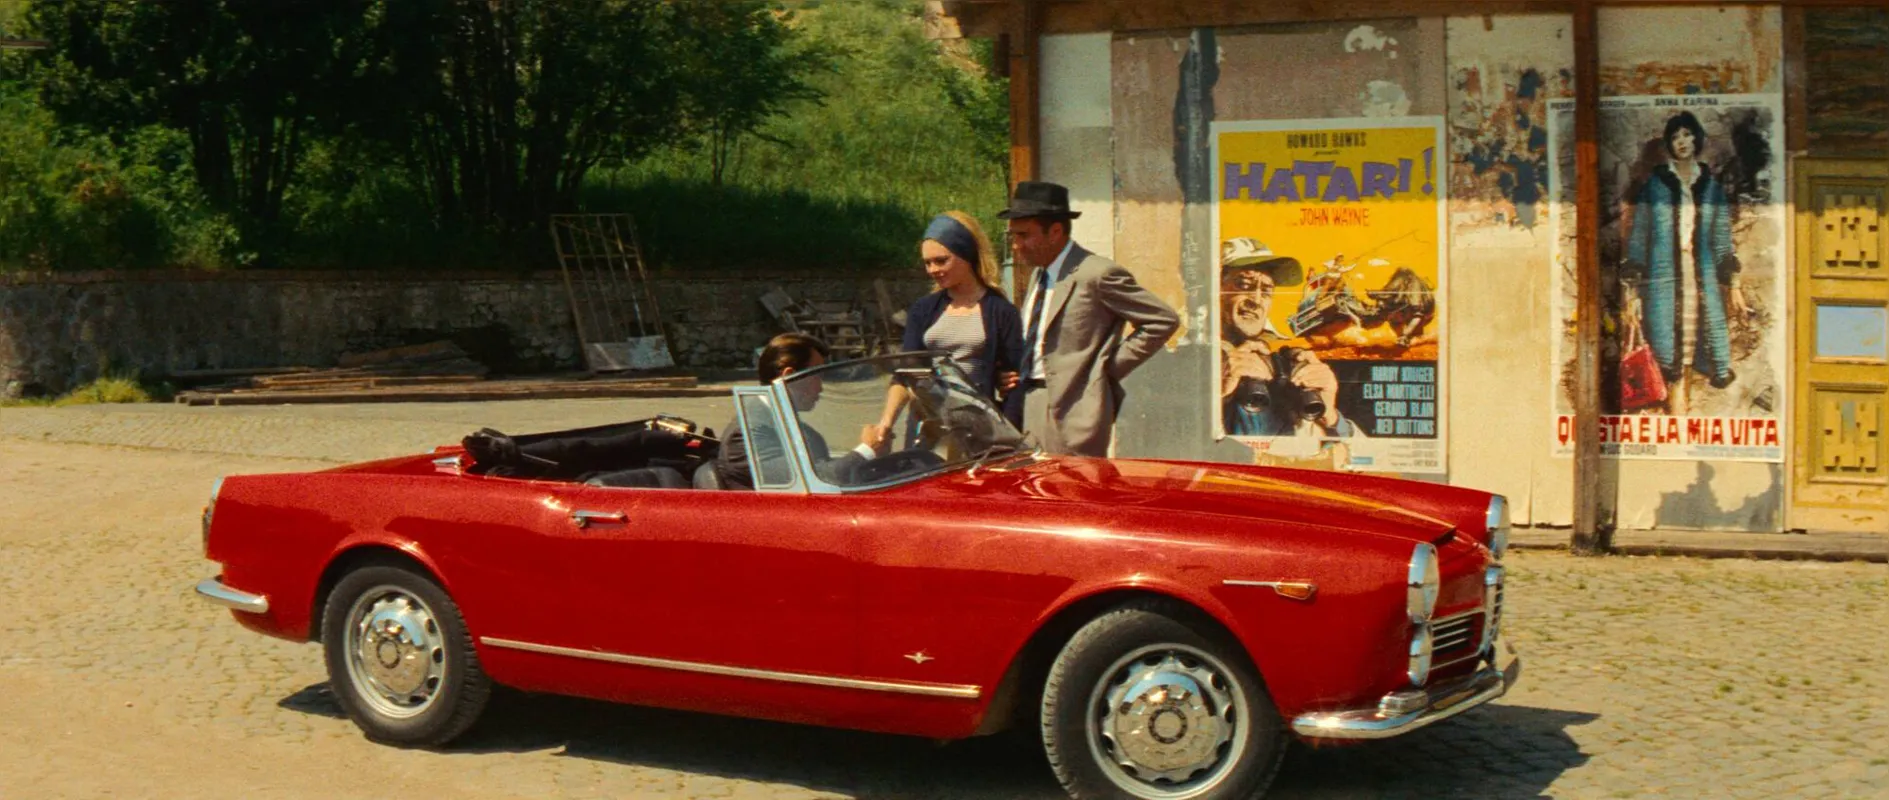 Brigitte Bardot (Camille) e Michel Piccoli (Paul Javal) em Le Mépris ( 'O Desprezo'): filme em exibição na mostra Godard neste sábado (29), em Londrina